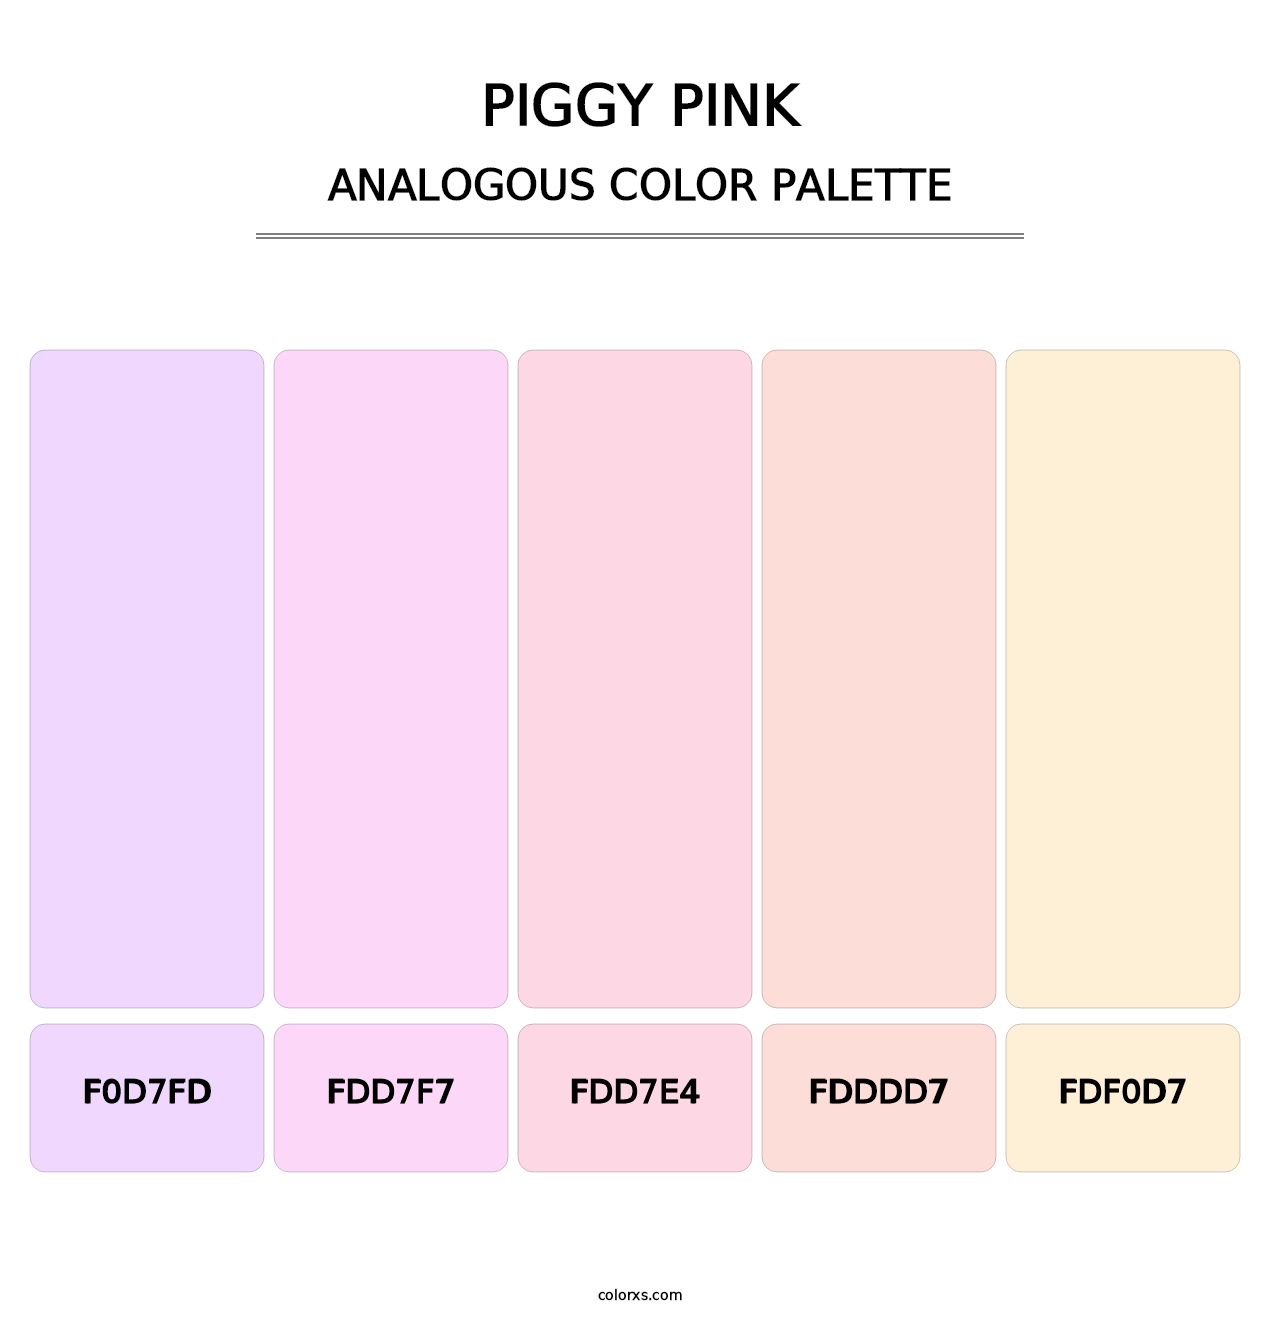 Piggy Pink - Analogous Color Palette